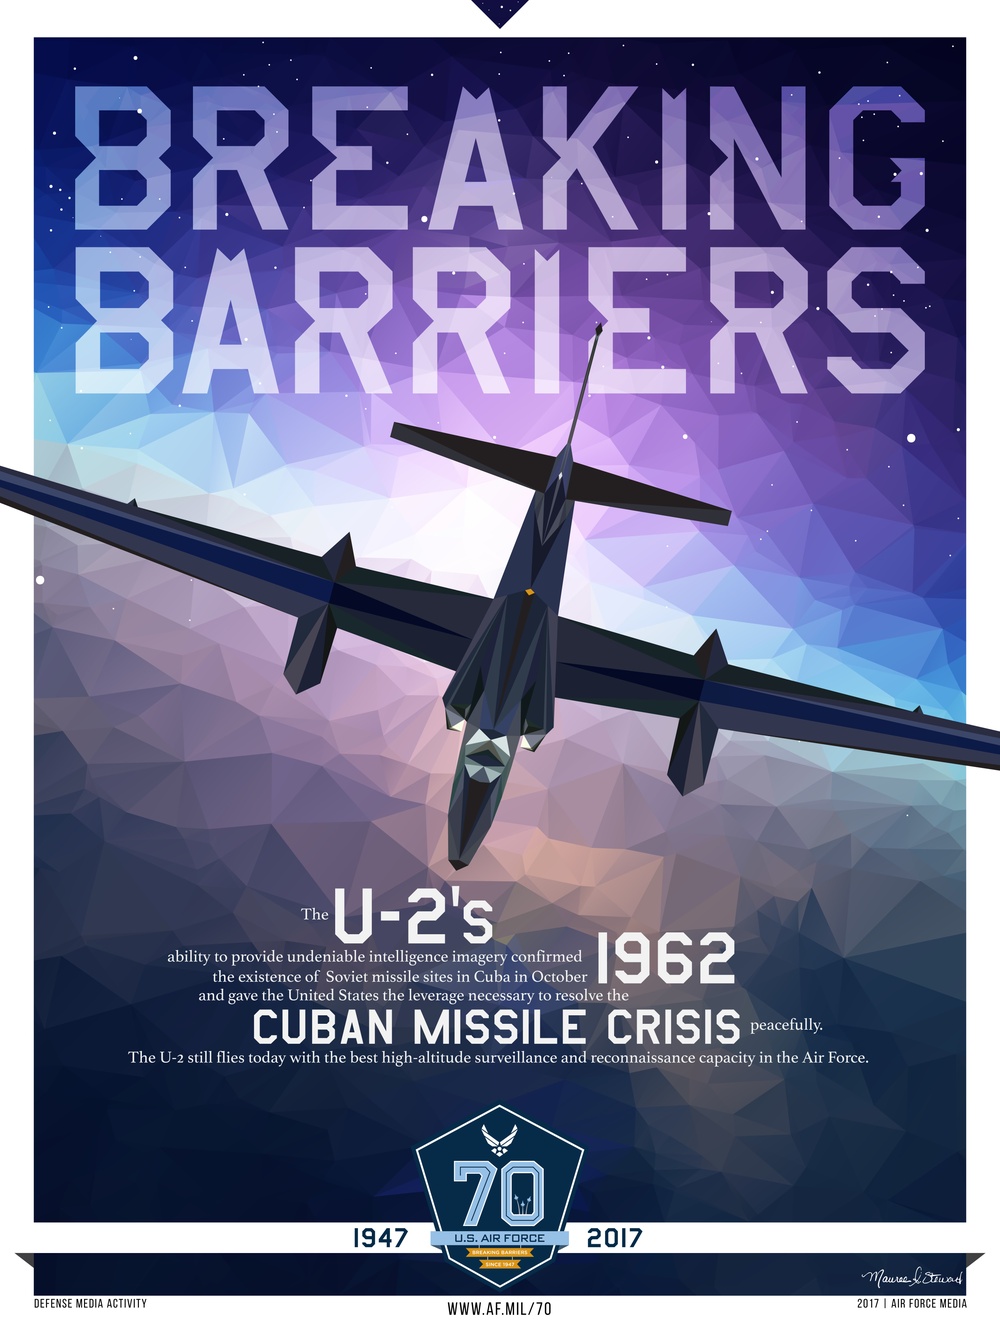 Breaking Barriers-the U-2 (2 of 8)